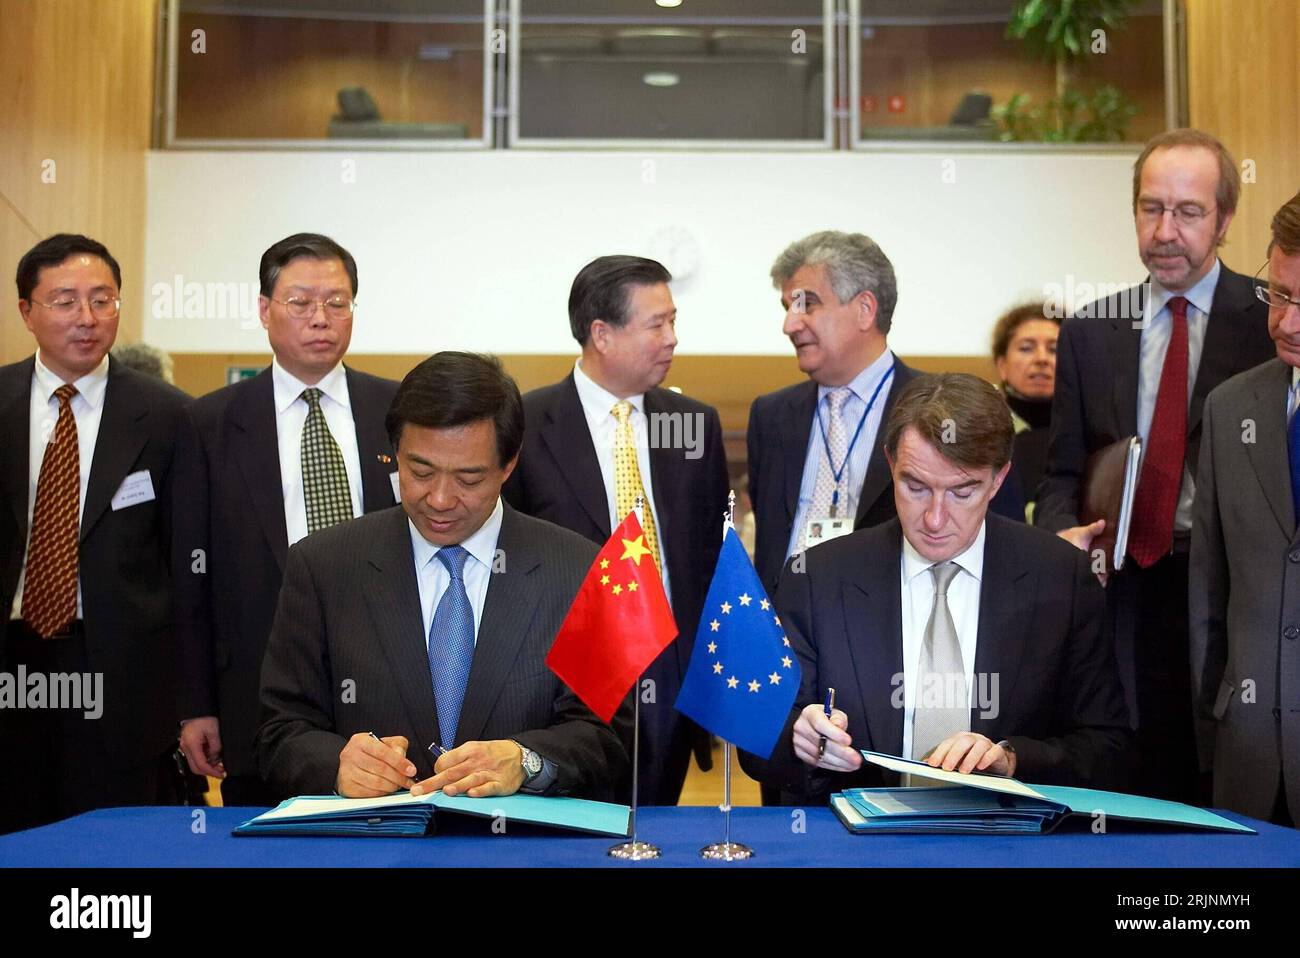 Bildnummer: 50977185 Datum: 05.11.2005 Copyright: imago/Xinhua Bo Xilai (li., CHN/Handelsminister China) und EU-Handelskommissar Peter Mandelson (GBR) unterzeichnen ein Abkommen über eine eu-Entschädigung für China nach der Erweiterung der Europäischen Union im Rahmen des 20. Treffens der Handelsvertreter von China und der EU in Brüssel - PUBLICATIONxNOTxINxCHN, Personen; 2005, Brüssel, Pressetermin, Treffen, Handel, Textileinfuhr, Textilstreit, Textilhandel, Politiker, Europäische Kommission, Krux, Vertragsunterzeichnung, Abkommen, unterschreiben, Schreiben, unterzeichnen, Handelsabkommen, Foto Stock